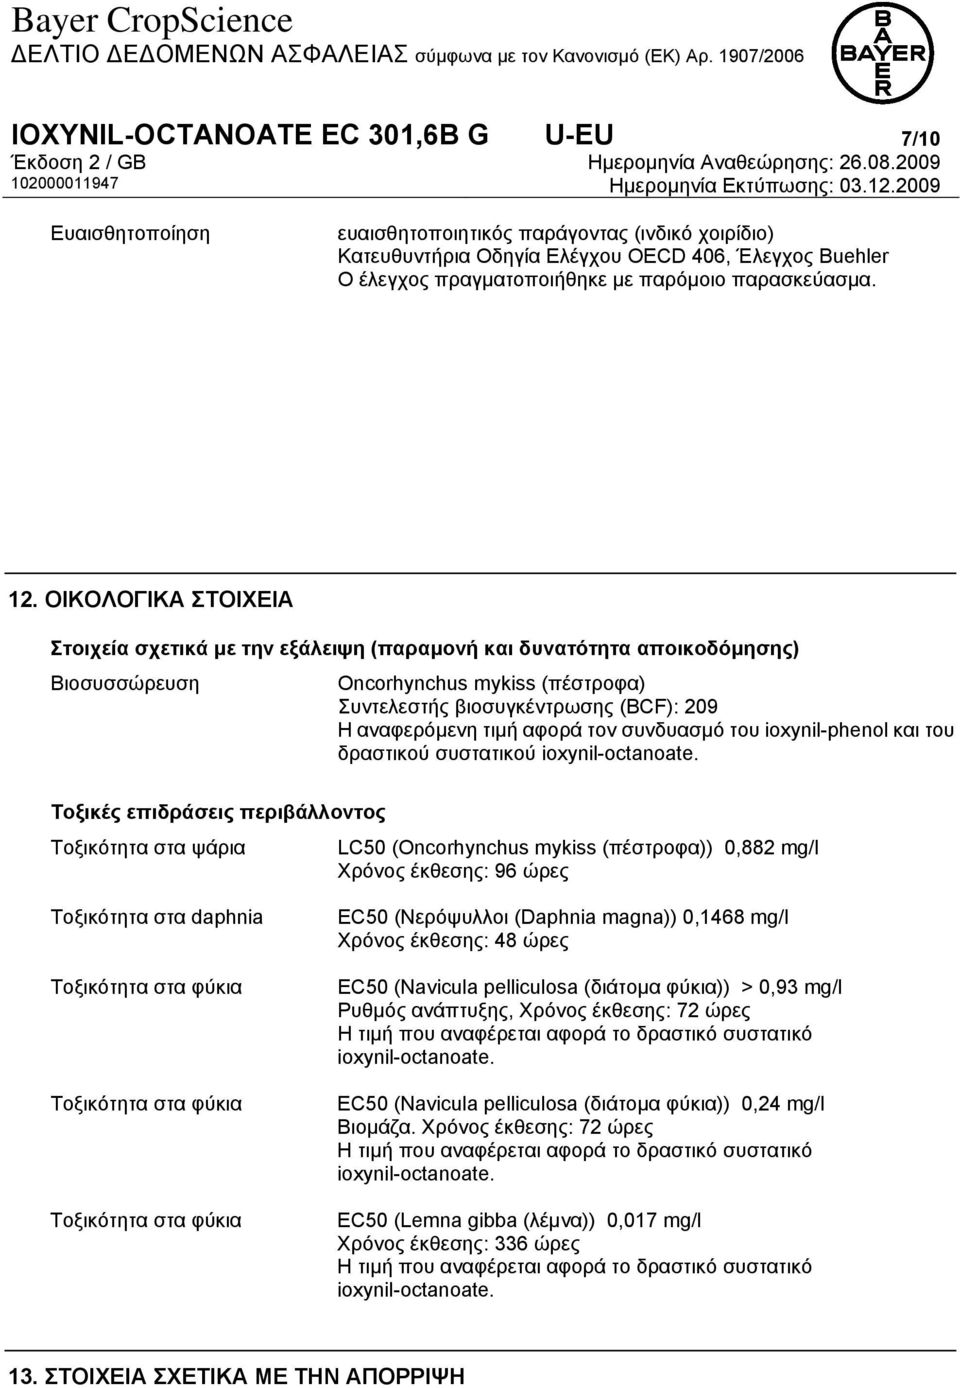 ΟΙΚΟΛΟΓΙΚΑ ΣΤΟΙΧΕΙΑ Στοιχεία σχετικά με την εξάλειψη (παραμονή και δυνατότητα αποικοδόμησης) Βιοσυσσώρευση Oncorhynchus mykiss (πέστροφα) Συντελεστής βιοσυγκέντρωσης (BCF): 209 Η αναφερόμενη τιμή